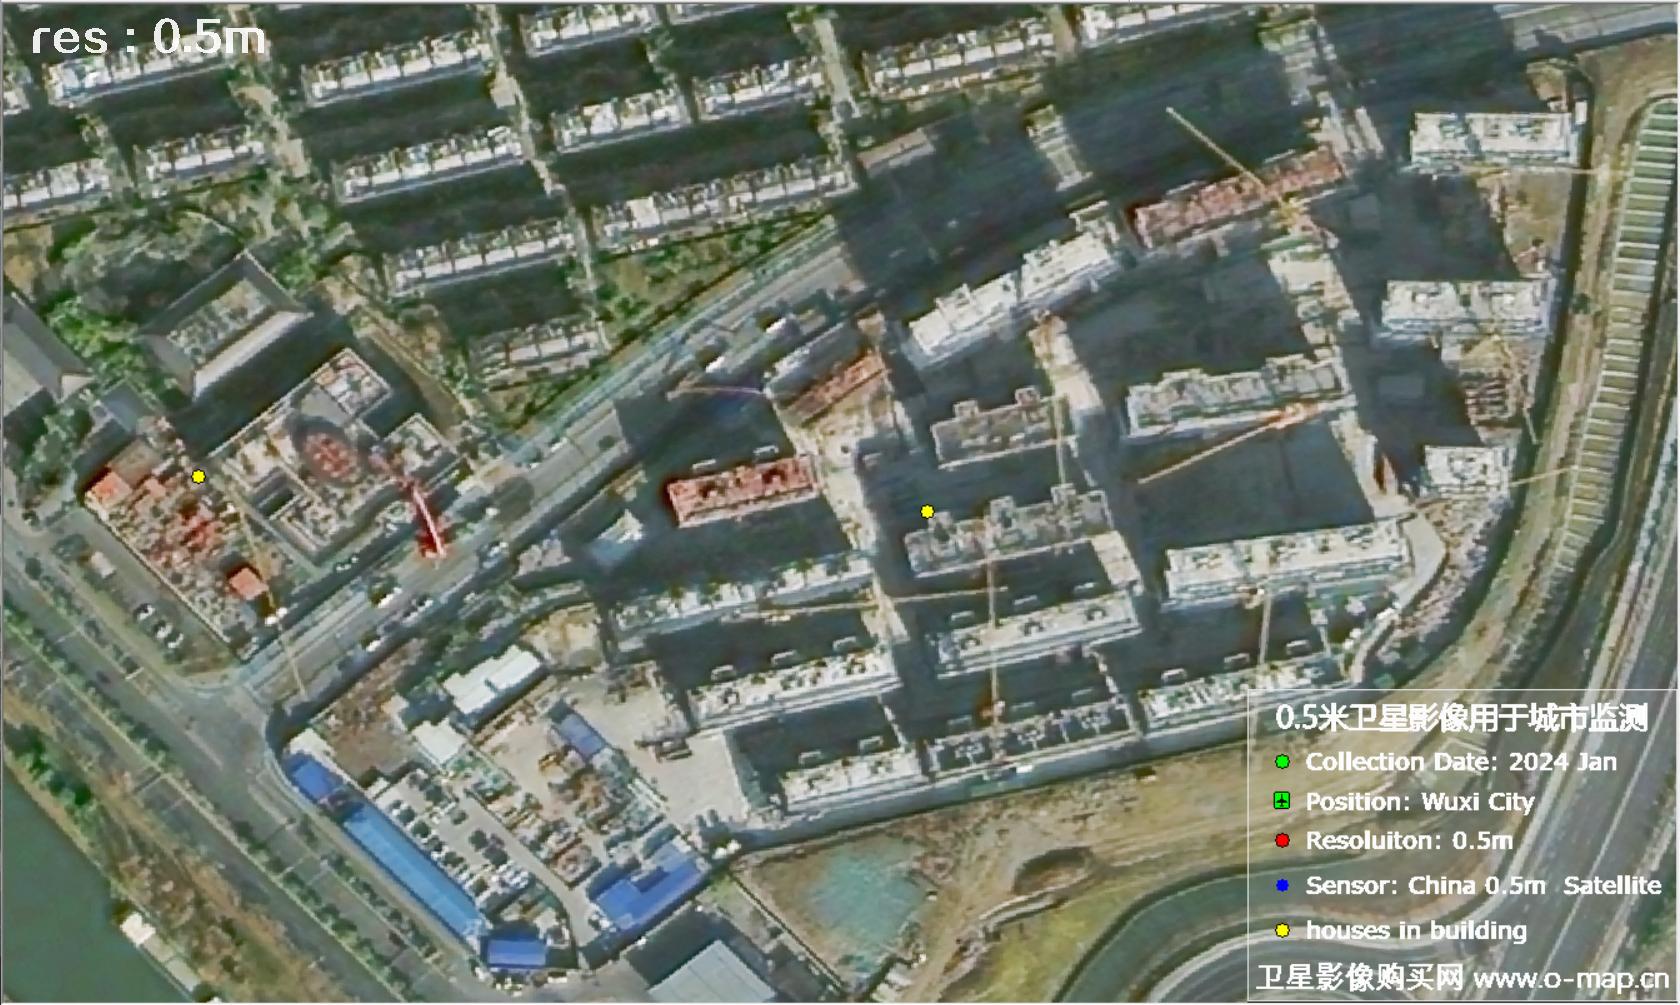 中国0.5米分辨率卫星影像用于无锡市在建房屋监测